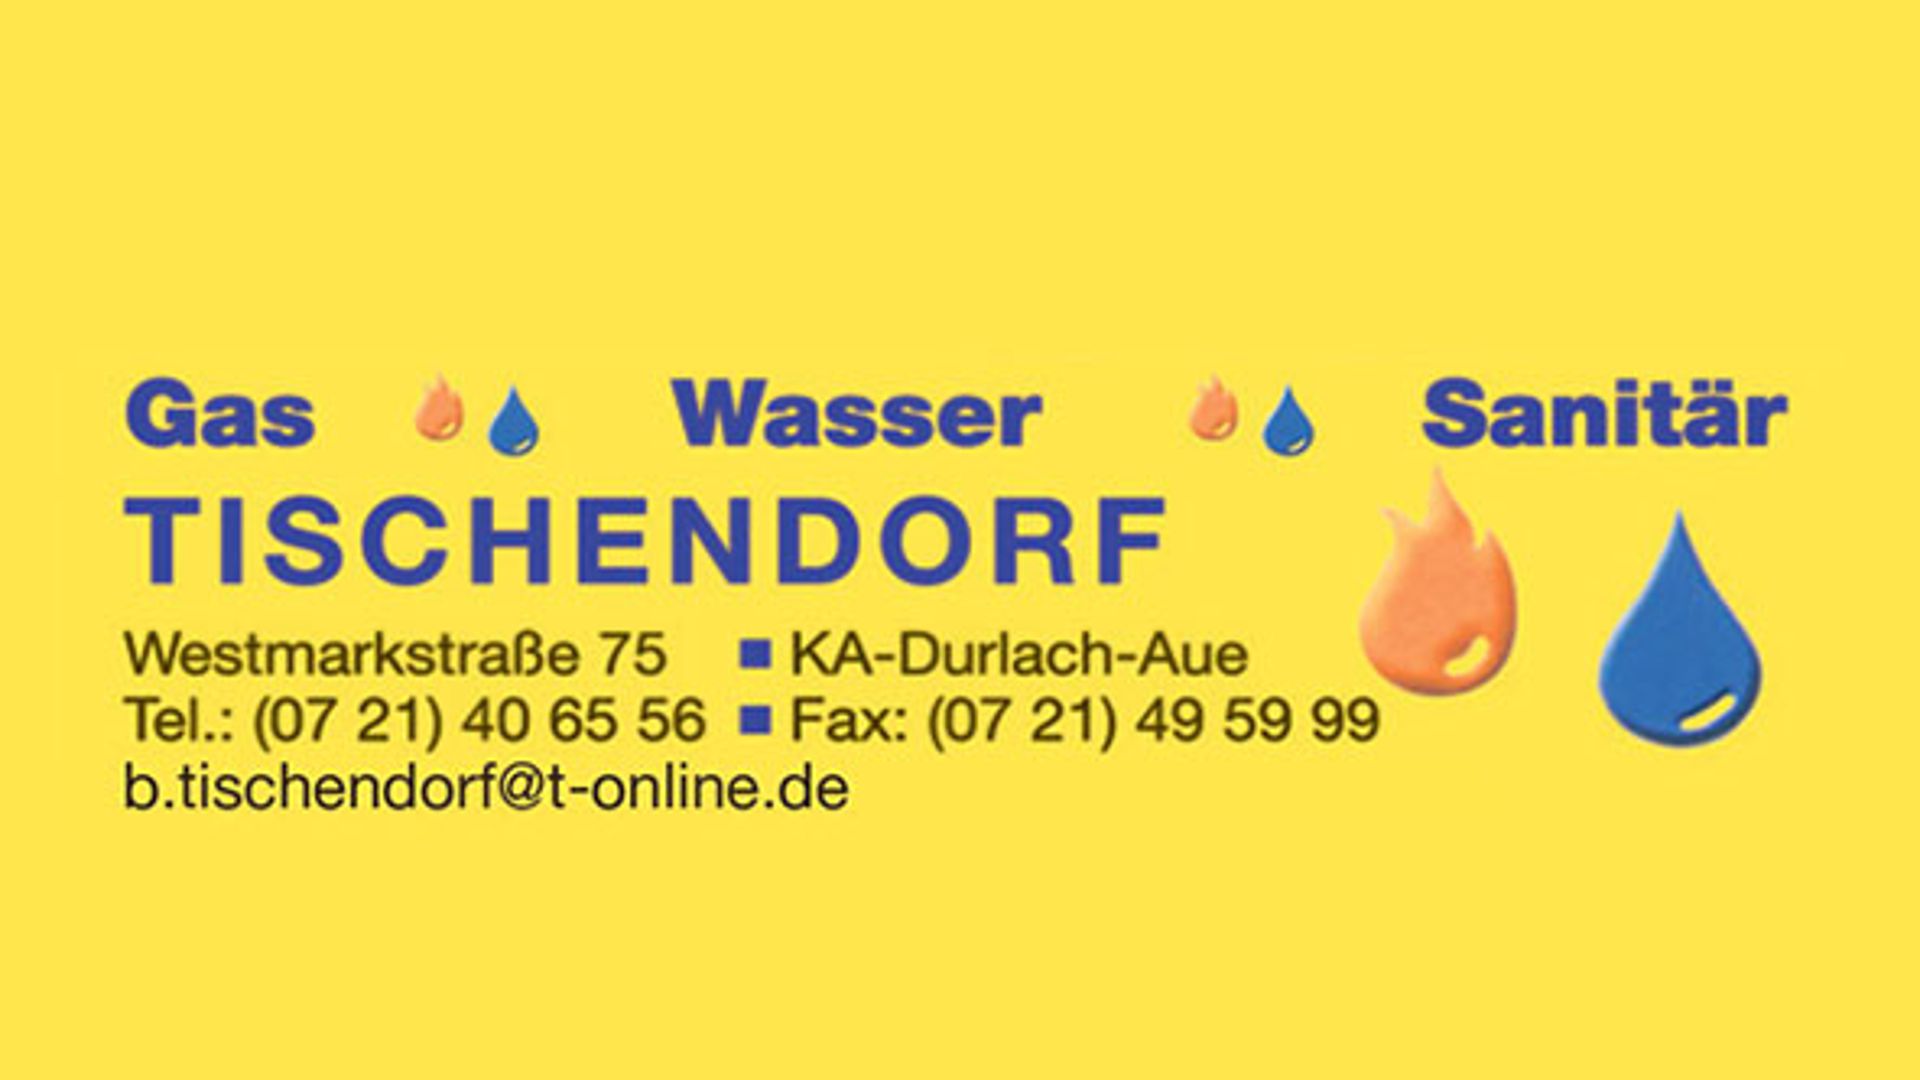 Tischendorf - Gas-Wasser-Sanitär